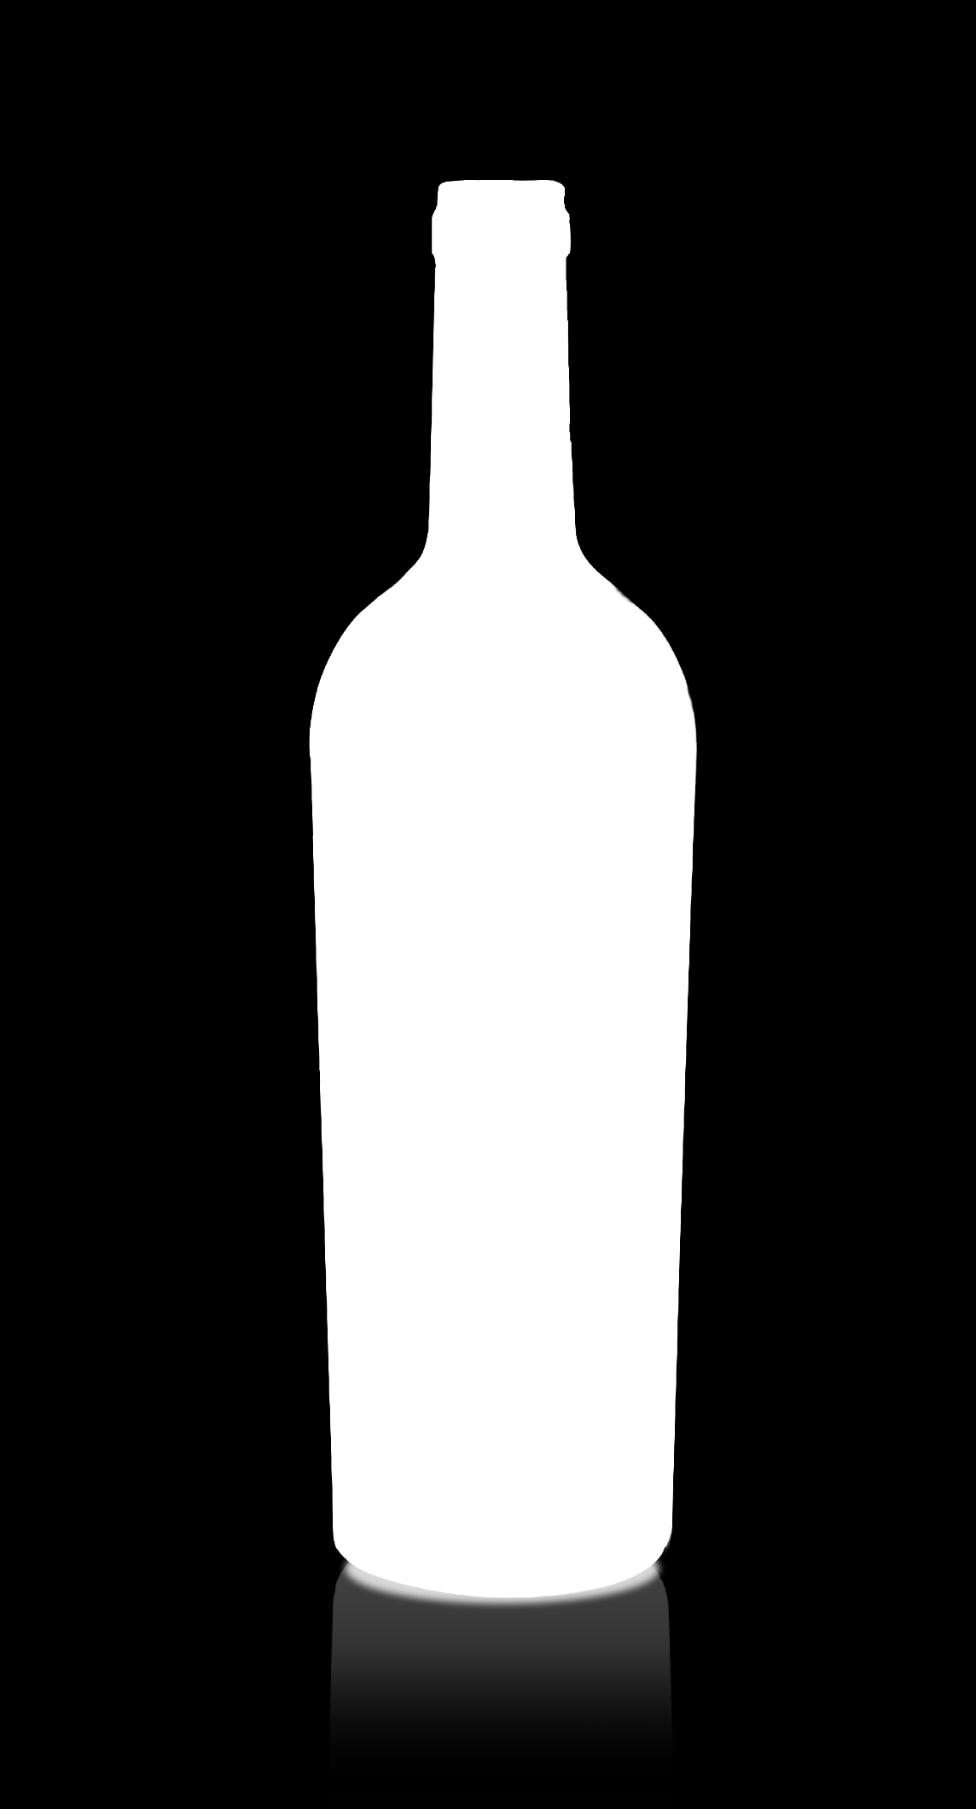 Pinot Grigio Bianco, fermo Delle Venezie D.O.C. Pinot Grigio 12,5% vol 5 g/litro 6 g/litro 8-10 C Pressatura soffice con fermentazione a 18 C ed affinamento su lieviti a 8 C per 3 mesi.